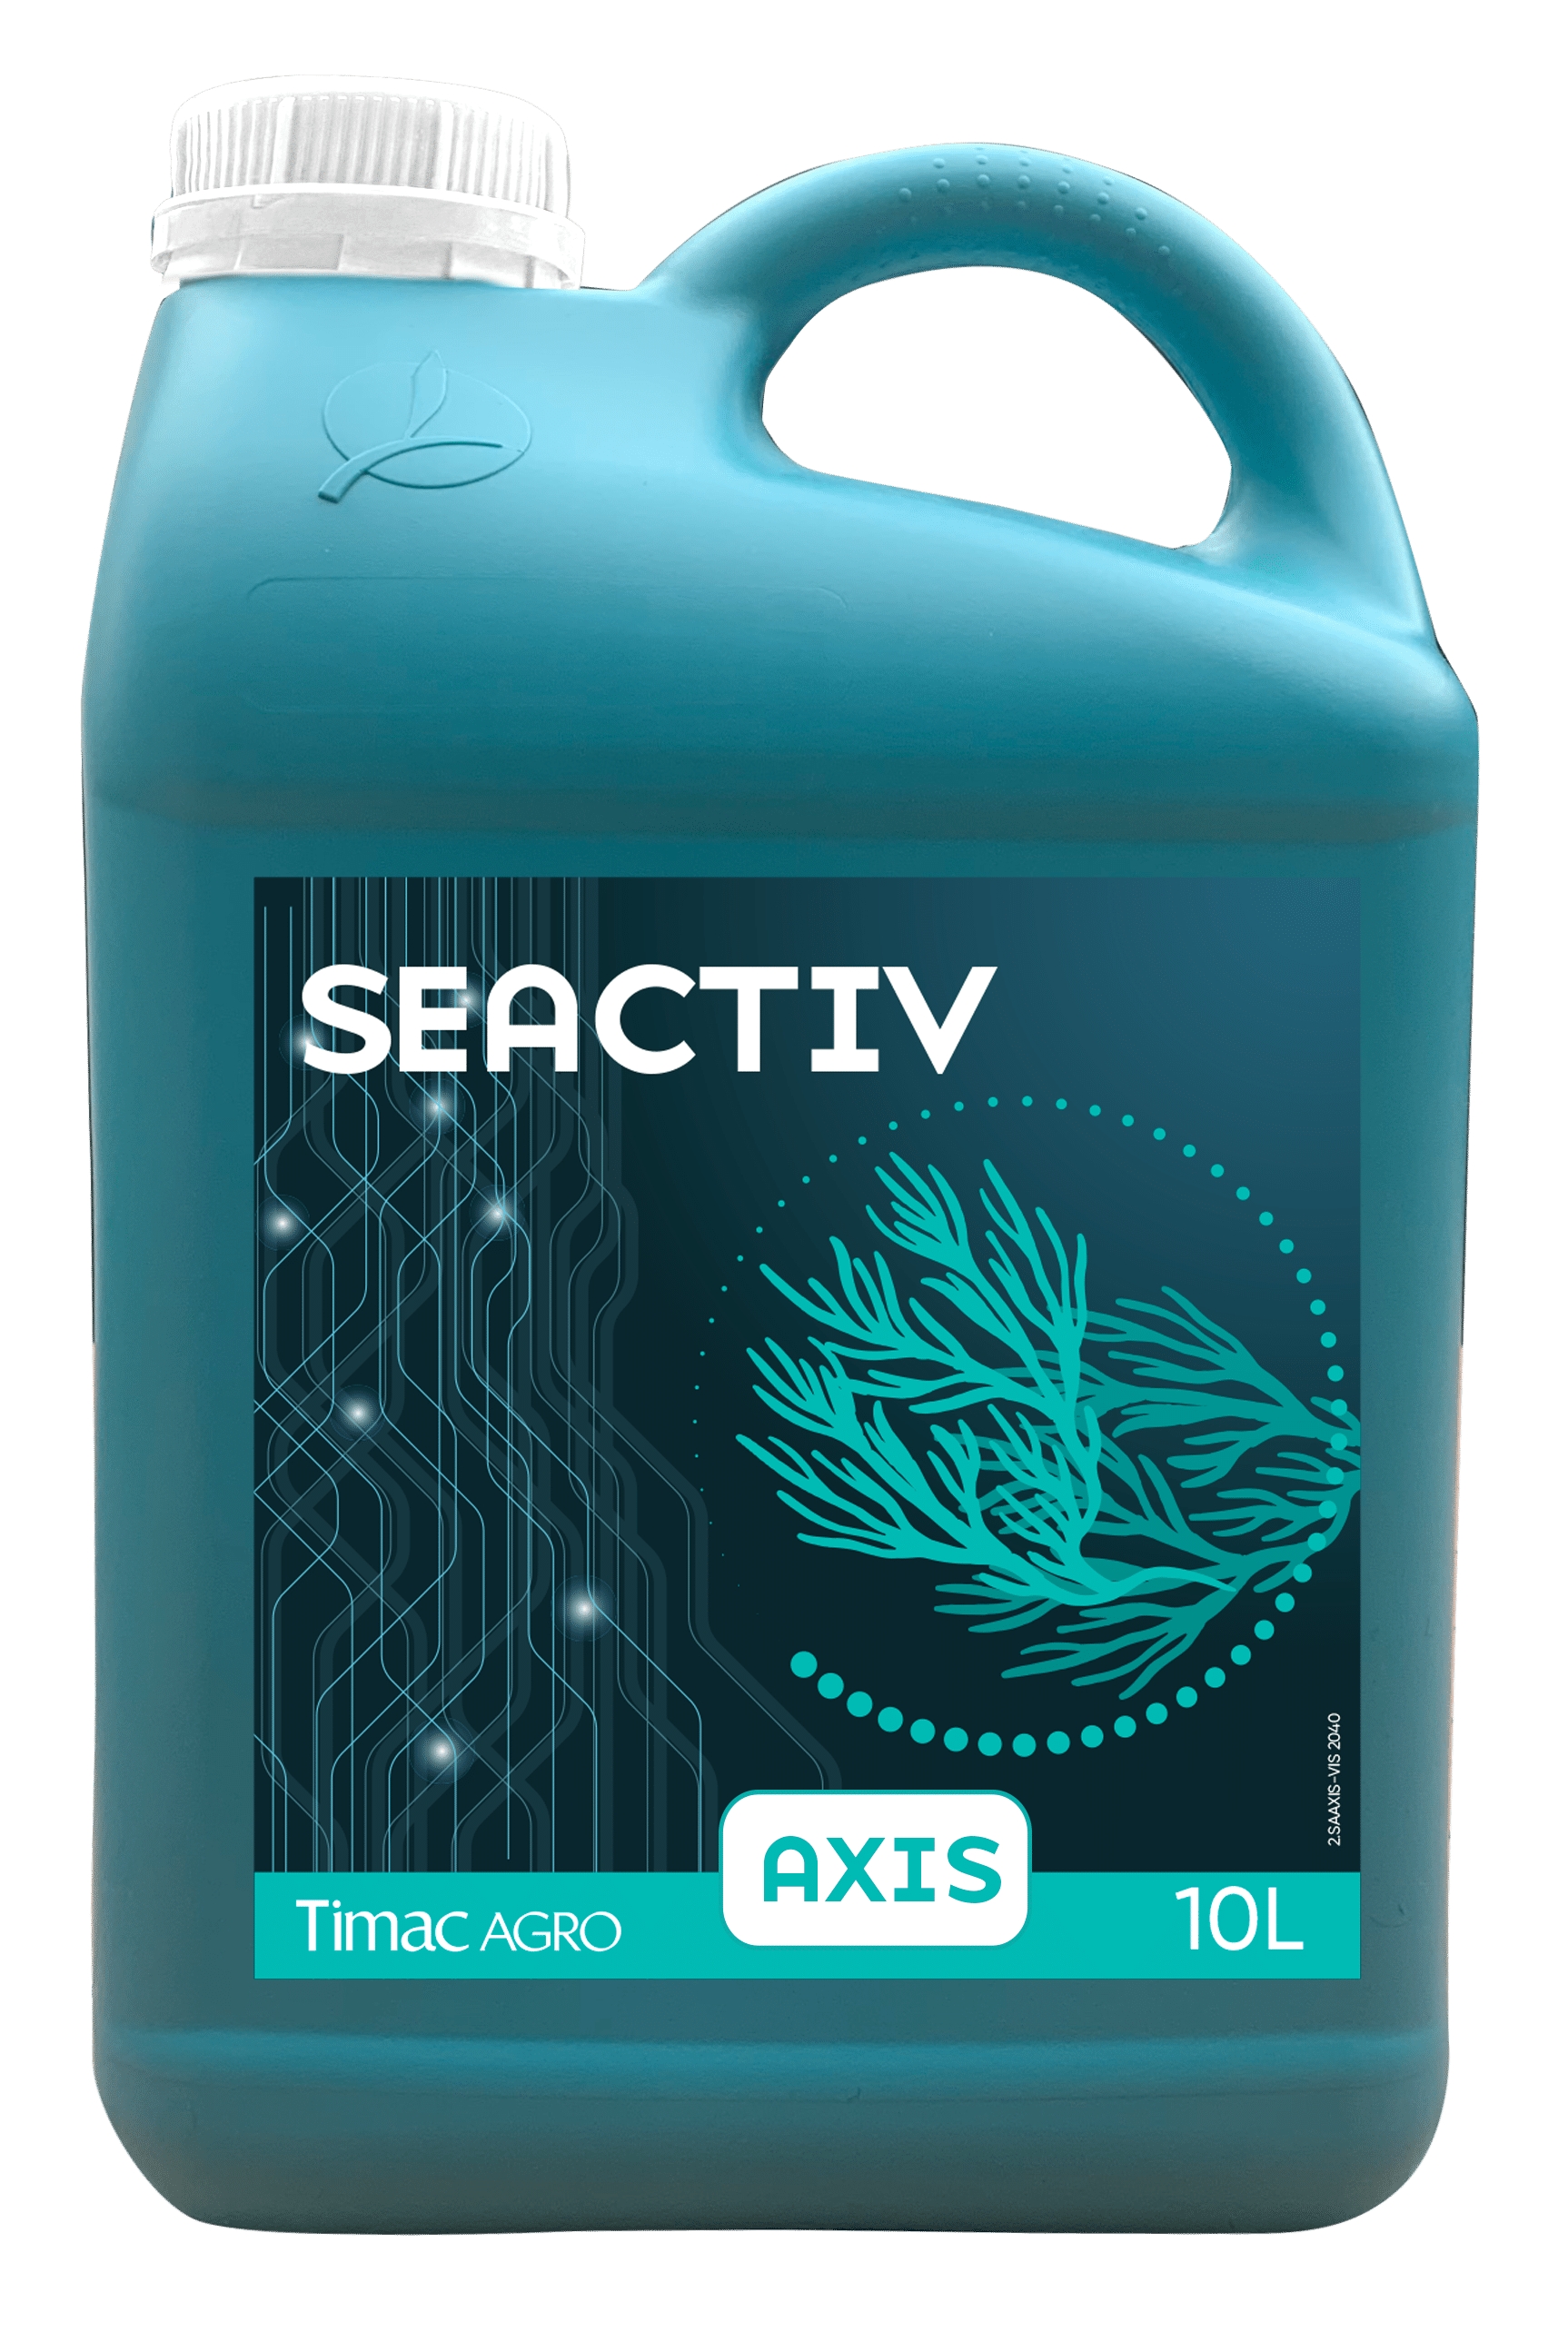 SEACTIV AXIS